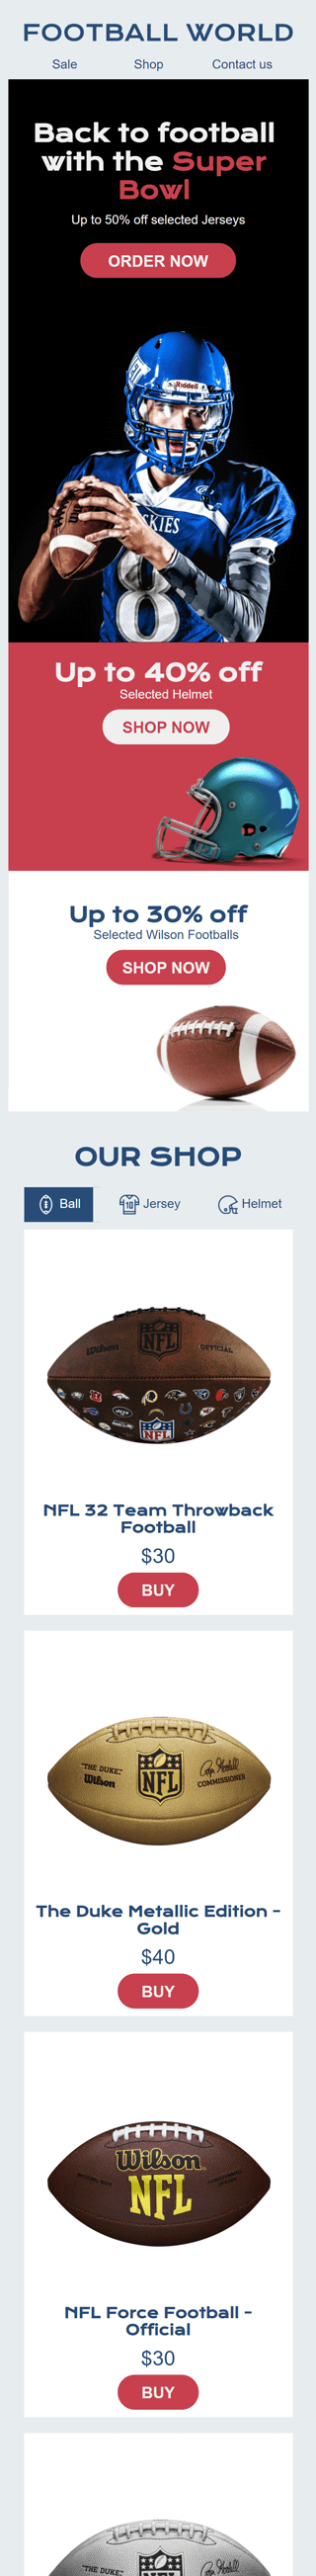 Plantilla de correo electrónico «Tienda de atributos deportivos» de Super Bowl para la industria de Deportes Vista de móvil